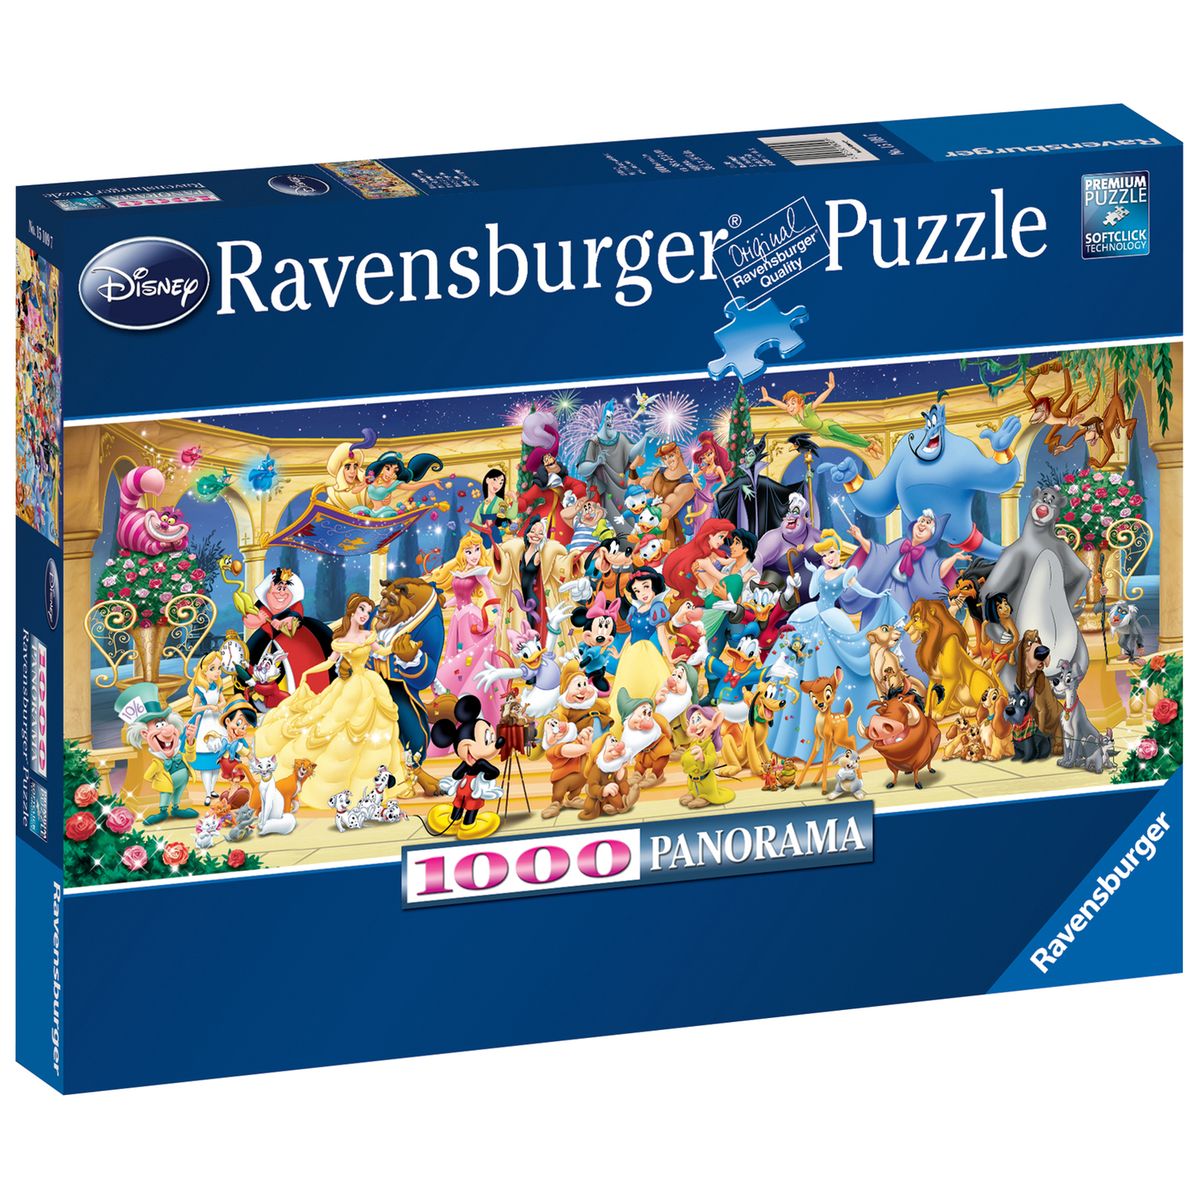 Ravensburger 15109 Disney photo de groupe 1000 pièces Puzzle panorama 